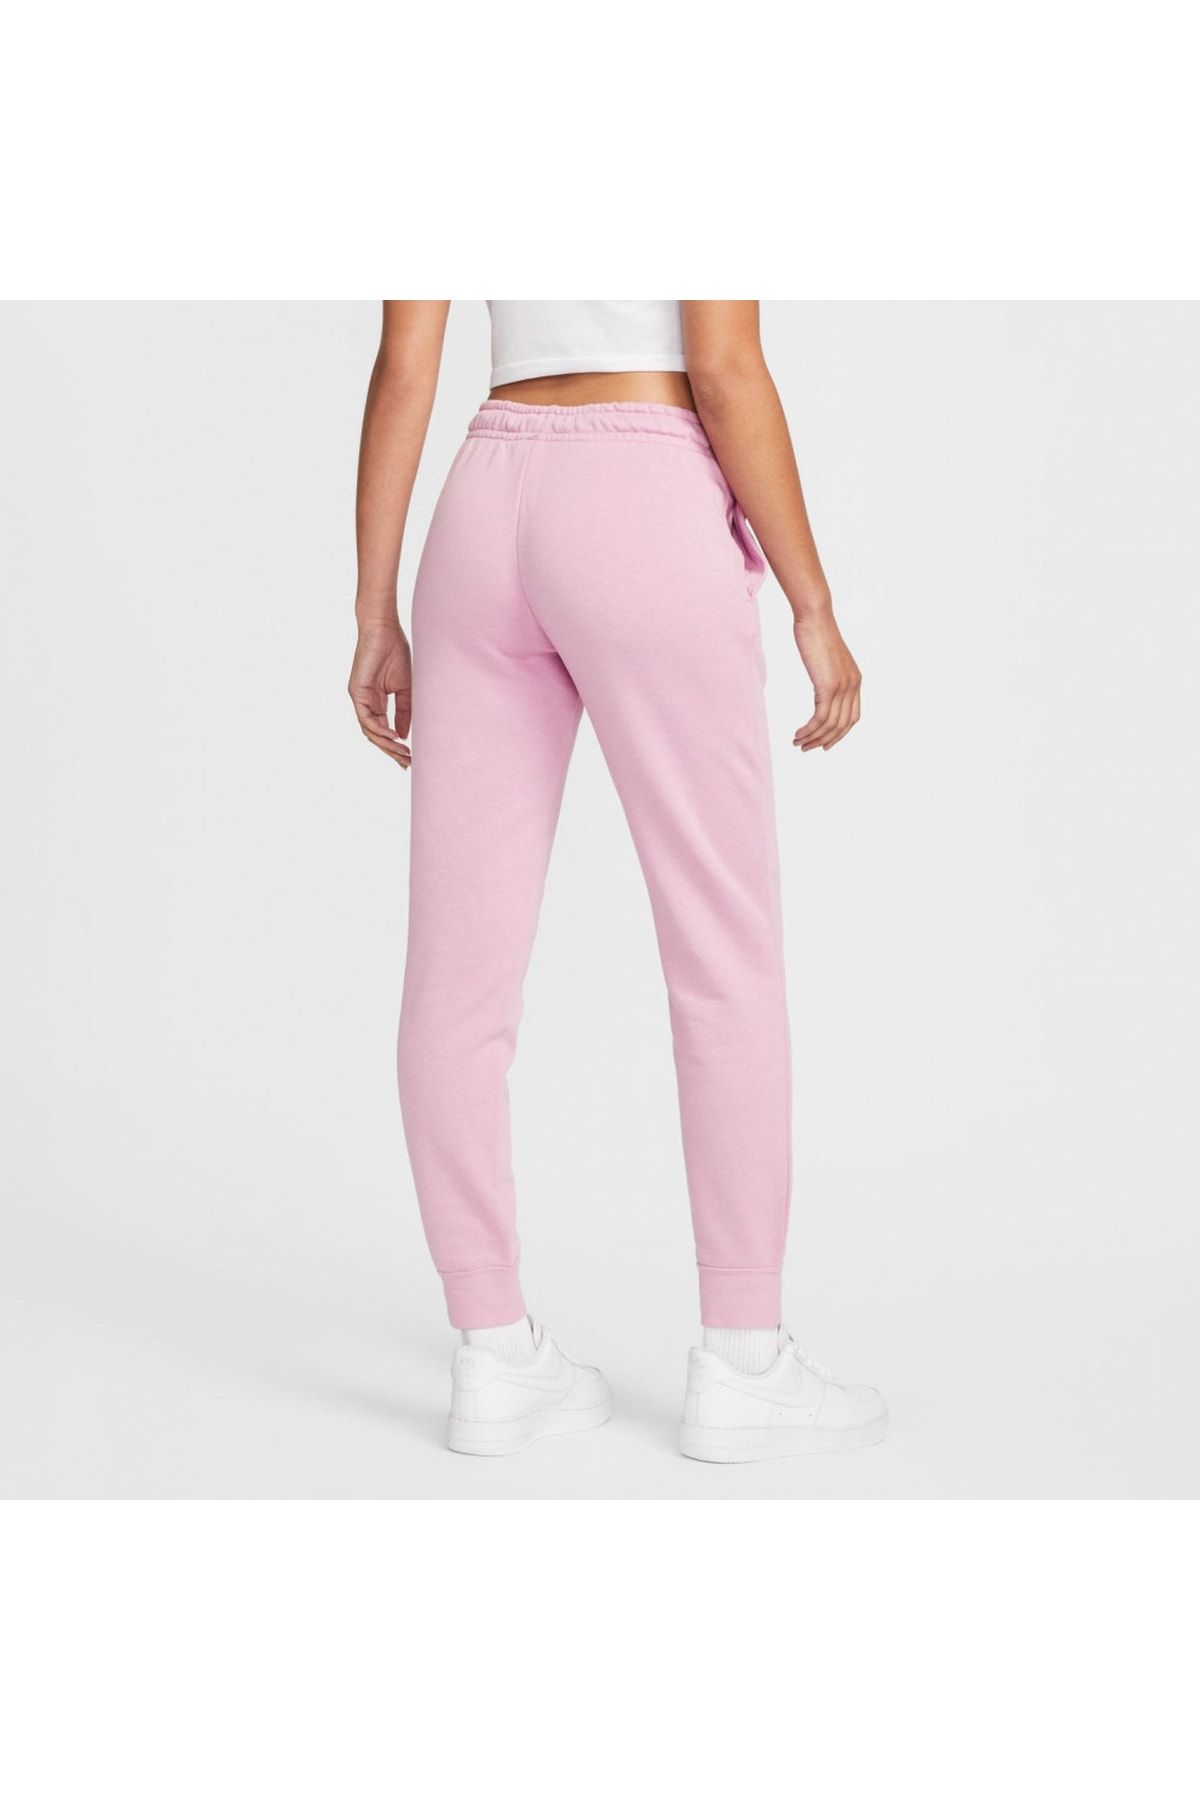 Nike Sportswear Essential Fleece Women\'s Pink Trendyol Sweatpants 